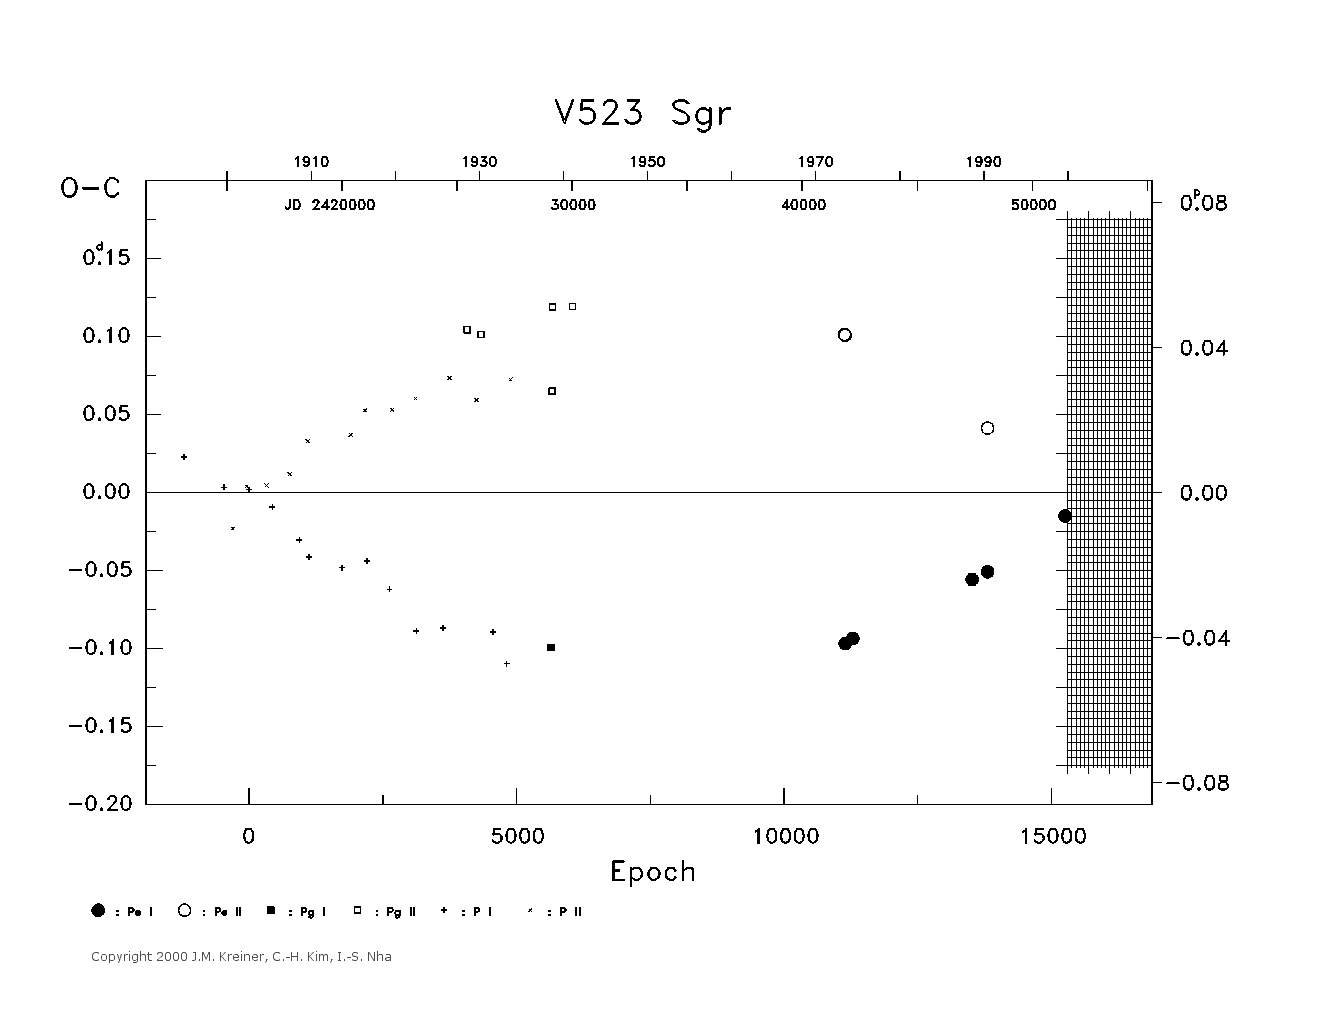 [IMAGE: large V523 SGR O-C diagram]